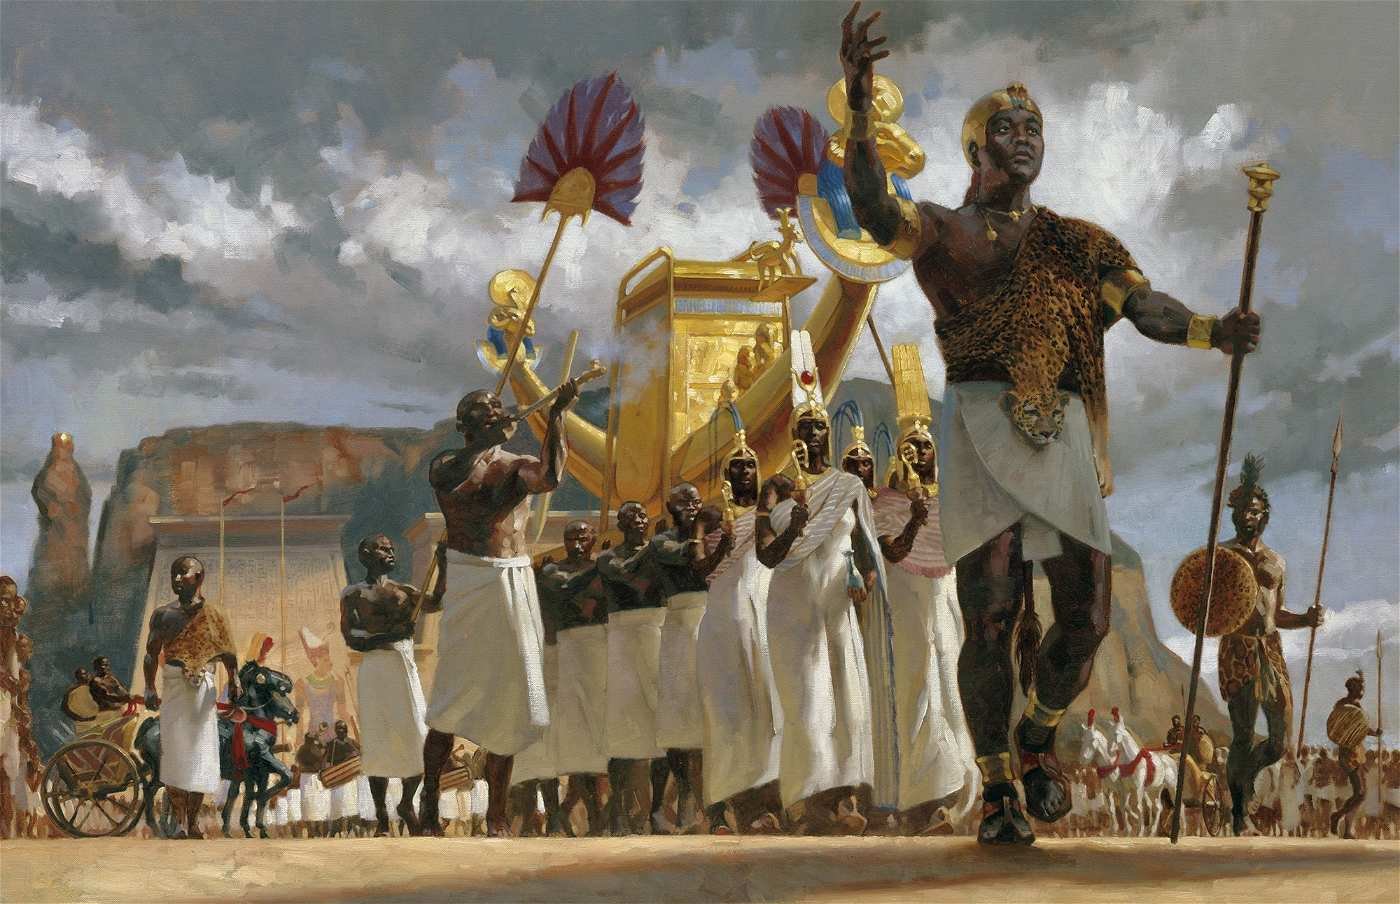 Nubia and the Kingdom of Kush